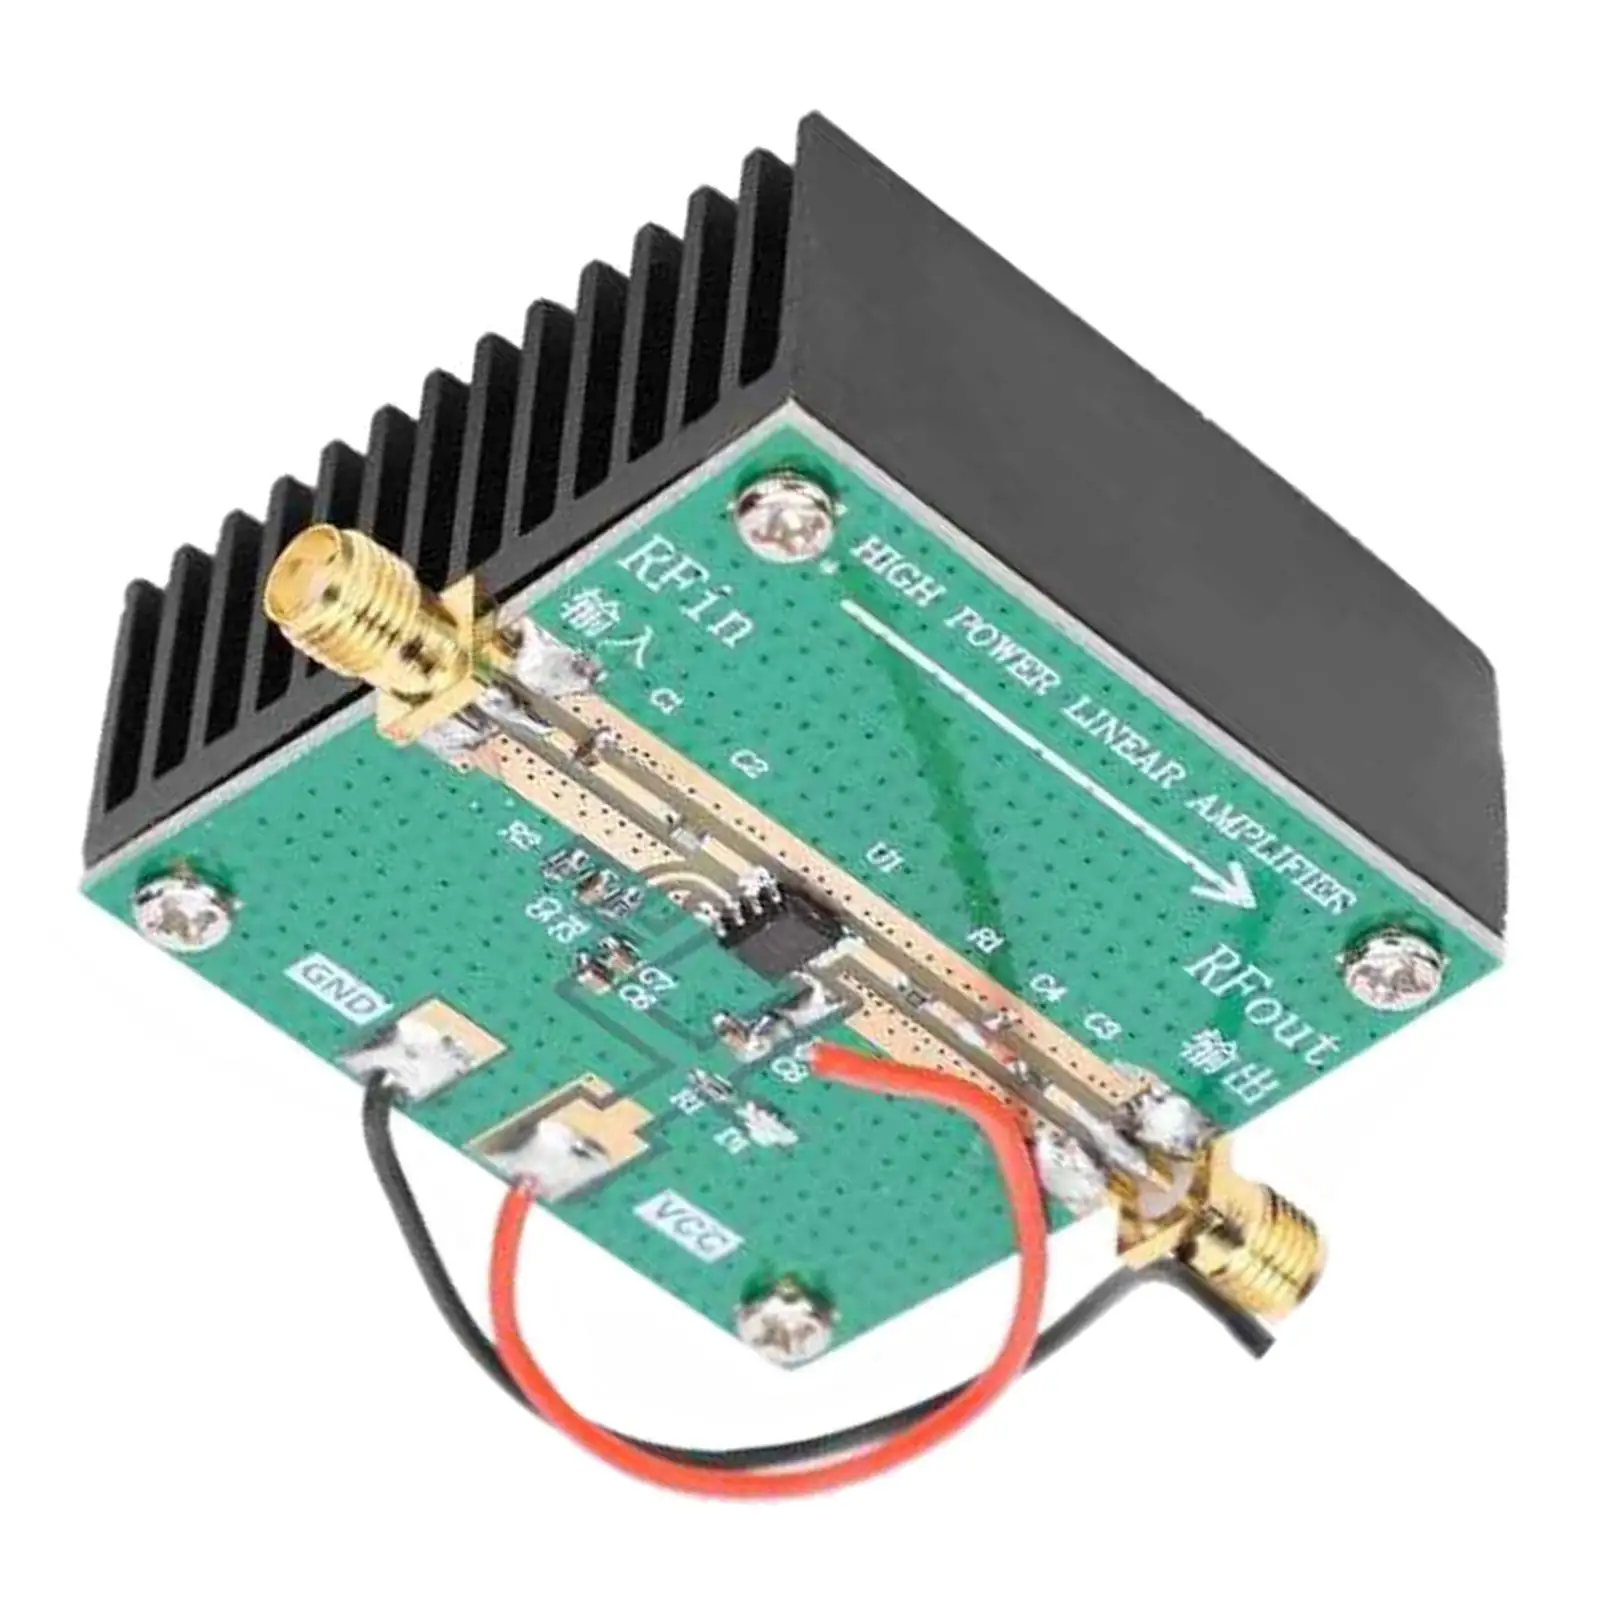 RF Power Amplifier with Heatsink, RF2126 2.4GHz 1W 400-2700MHz Amplification Module, RF Logarithmic Detector for FM Ham Radio